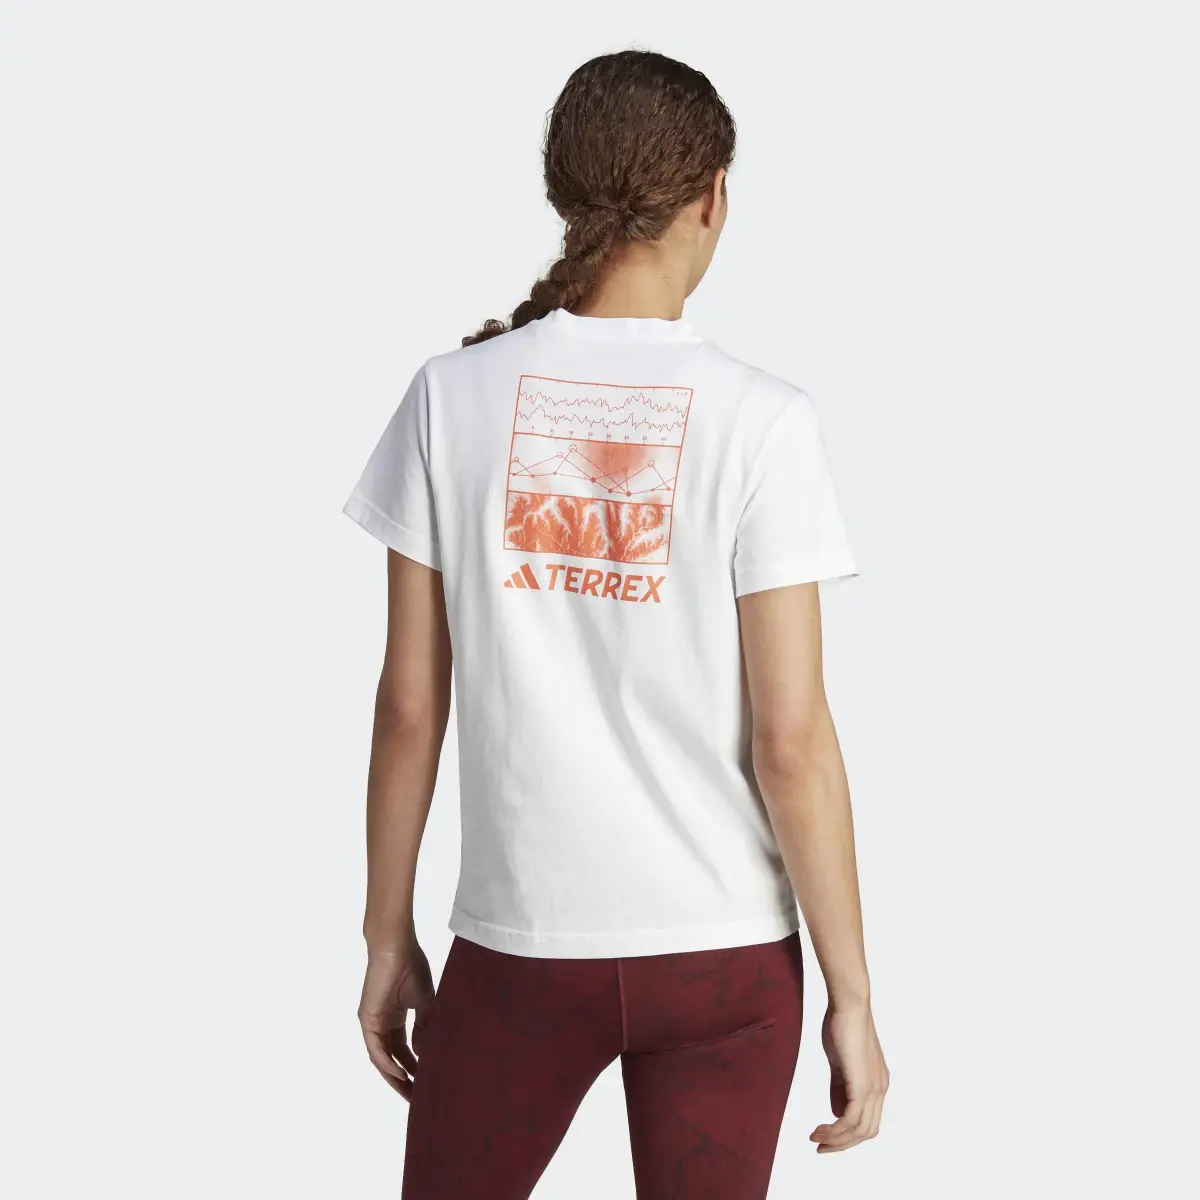 Adidas Camiseta Terrex Graphic Altitude. 3